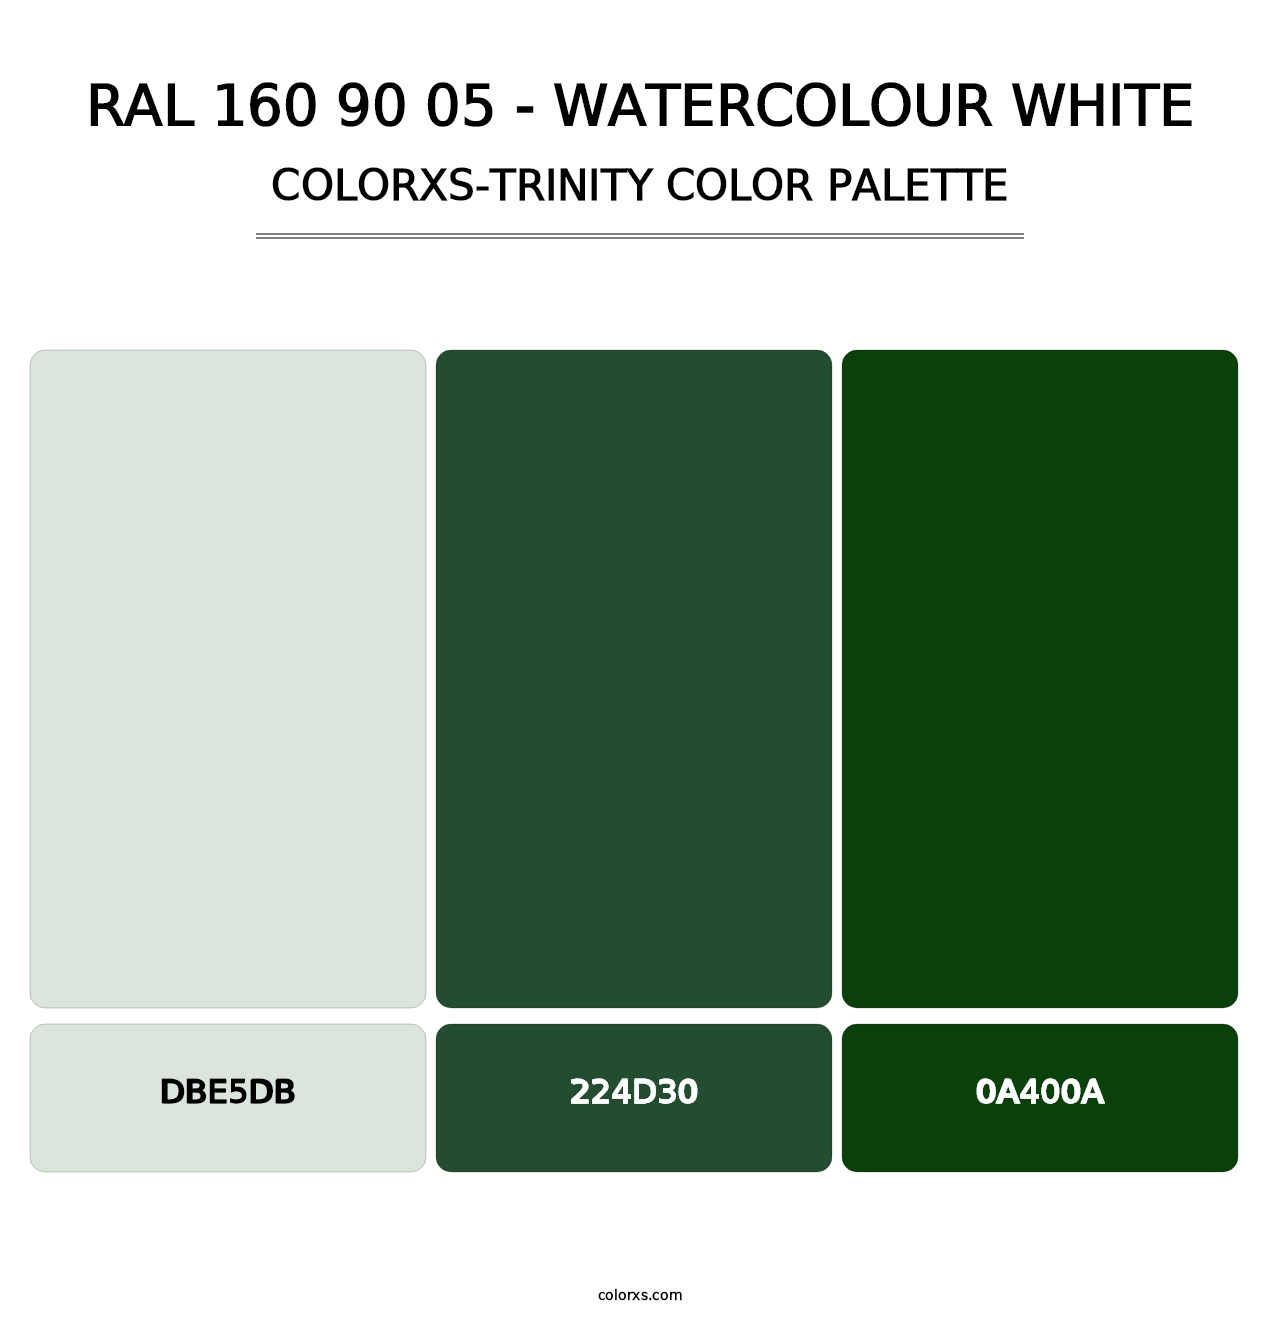 RAL 160 90 05 - Watercolour White - Colorxs Trinity Palette